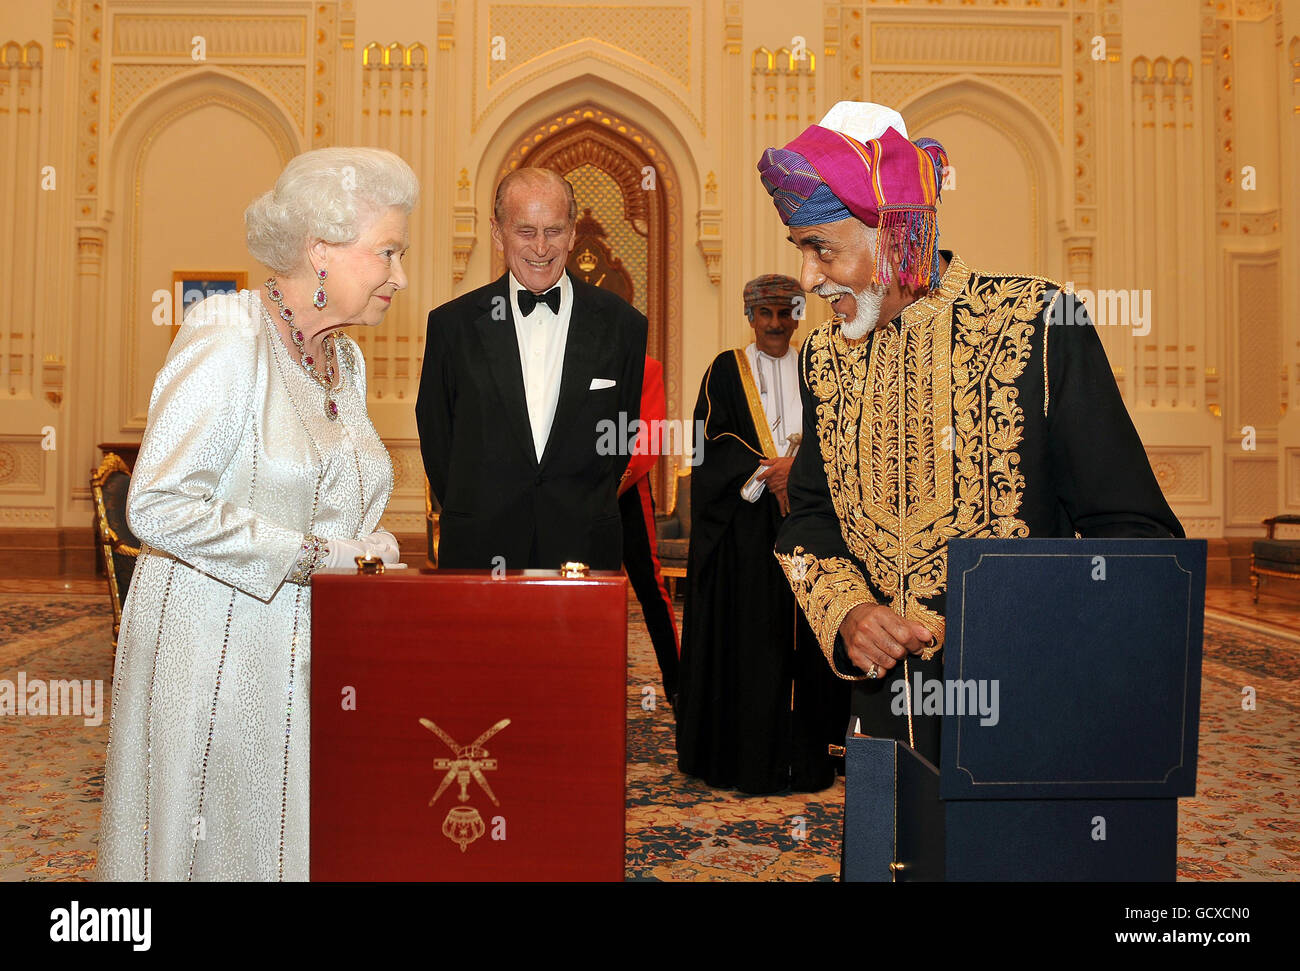 La reine Elizabeth II attend avec anticipation devant le sultan d'Oman, sa Majesté le sultan Qaboos bin Said lui présente un oeuf de style Faberge musical d'or, avant un banquet d'État à son palais à Muscat, Oman. Banque D'Images